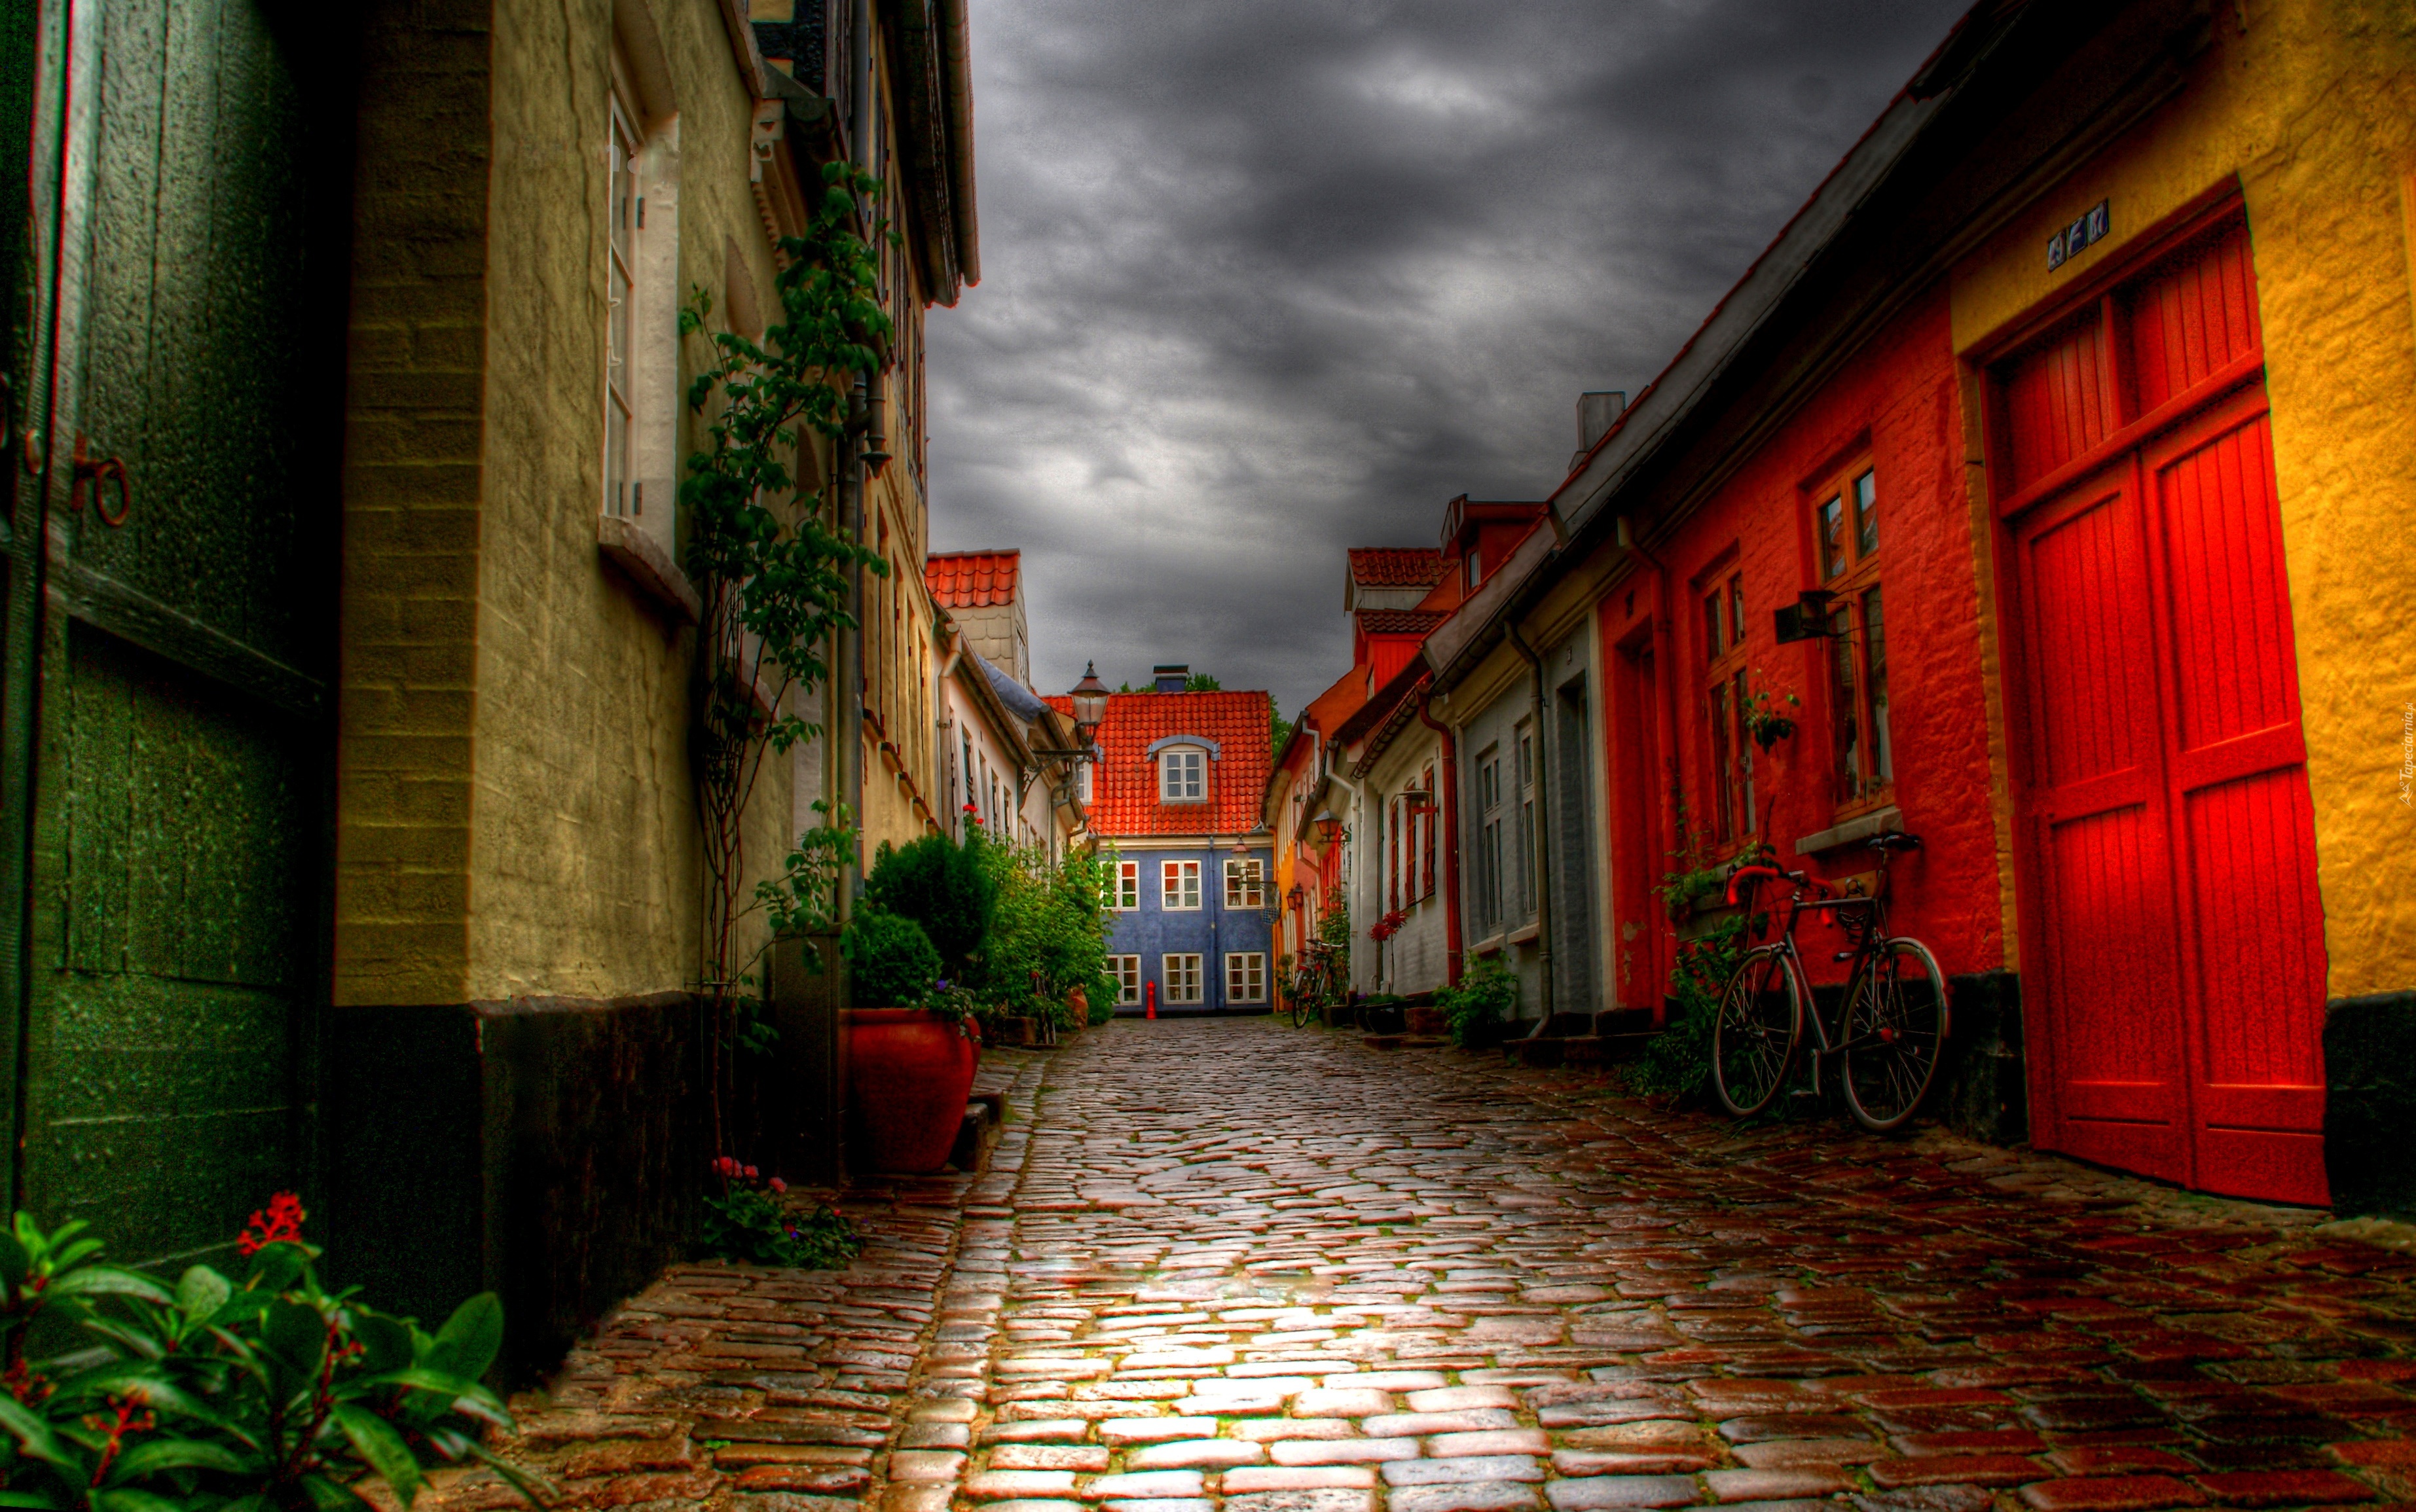 Обои на стол на улице. Старинные улицы. Улицы Европы. Красивые старинные улицы. Красивый переулок.